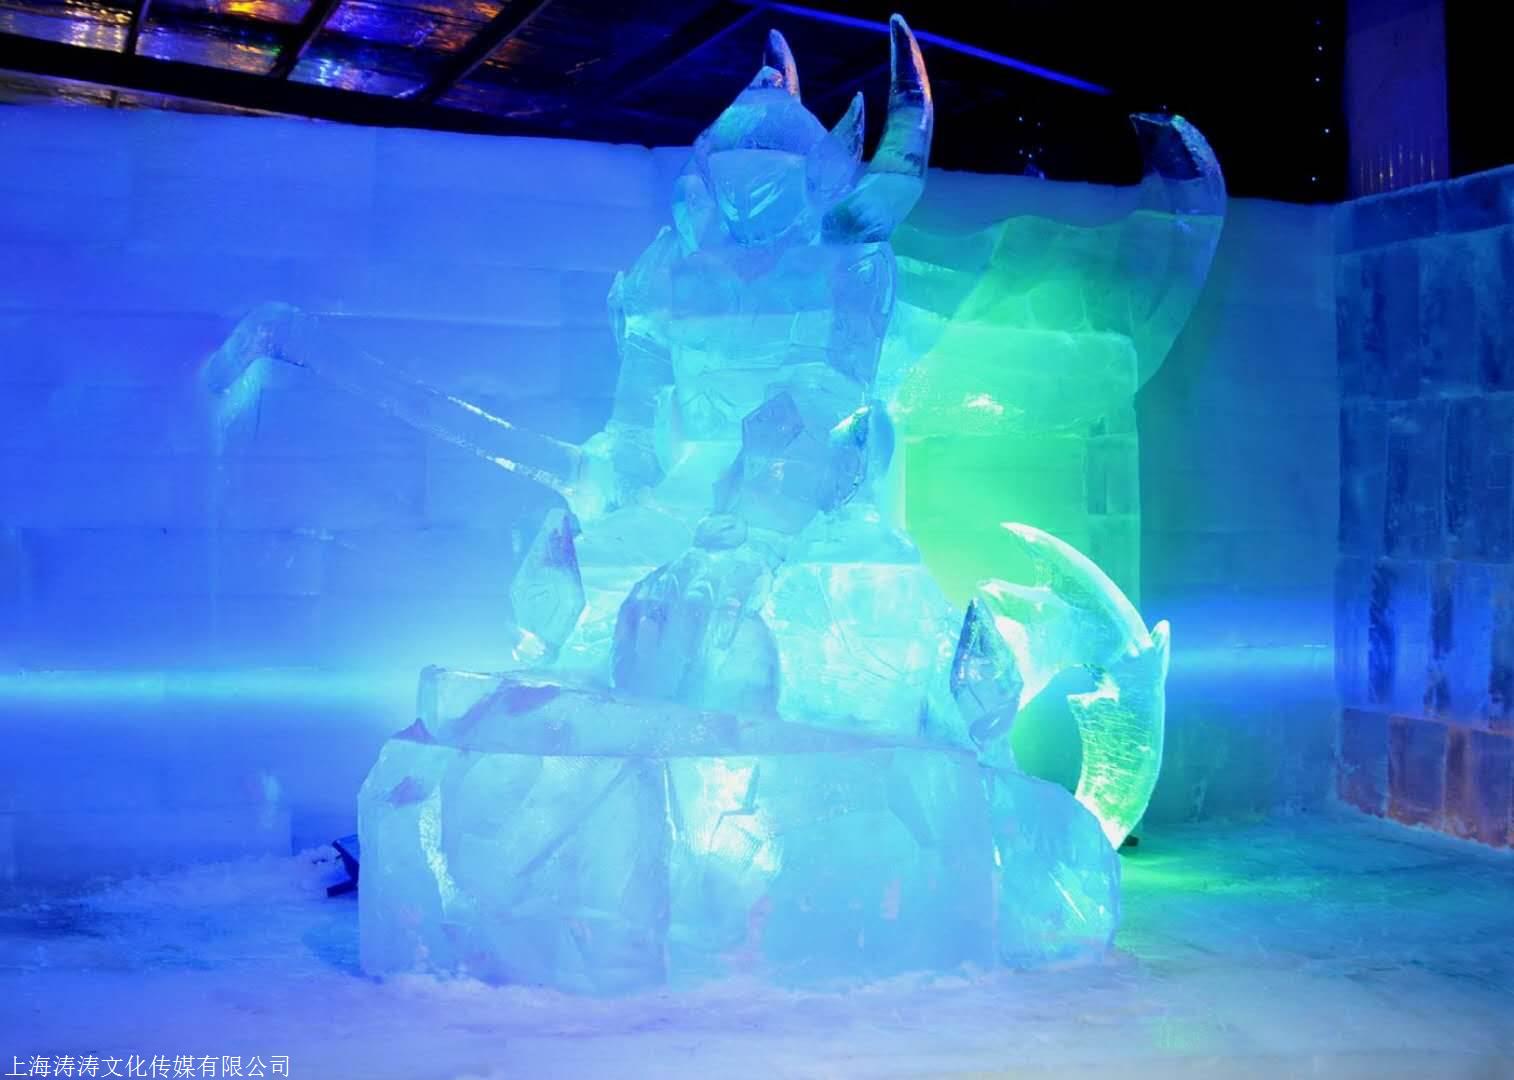 【携程攻略】景点,藁城国御冰雕极地大世界今年又换冰雕作品了，200米冰滑到特别刺激，…